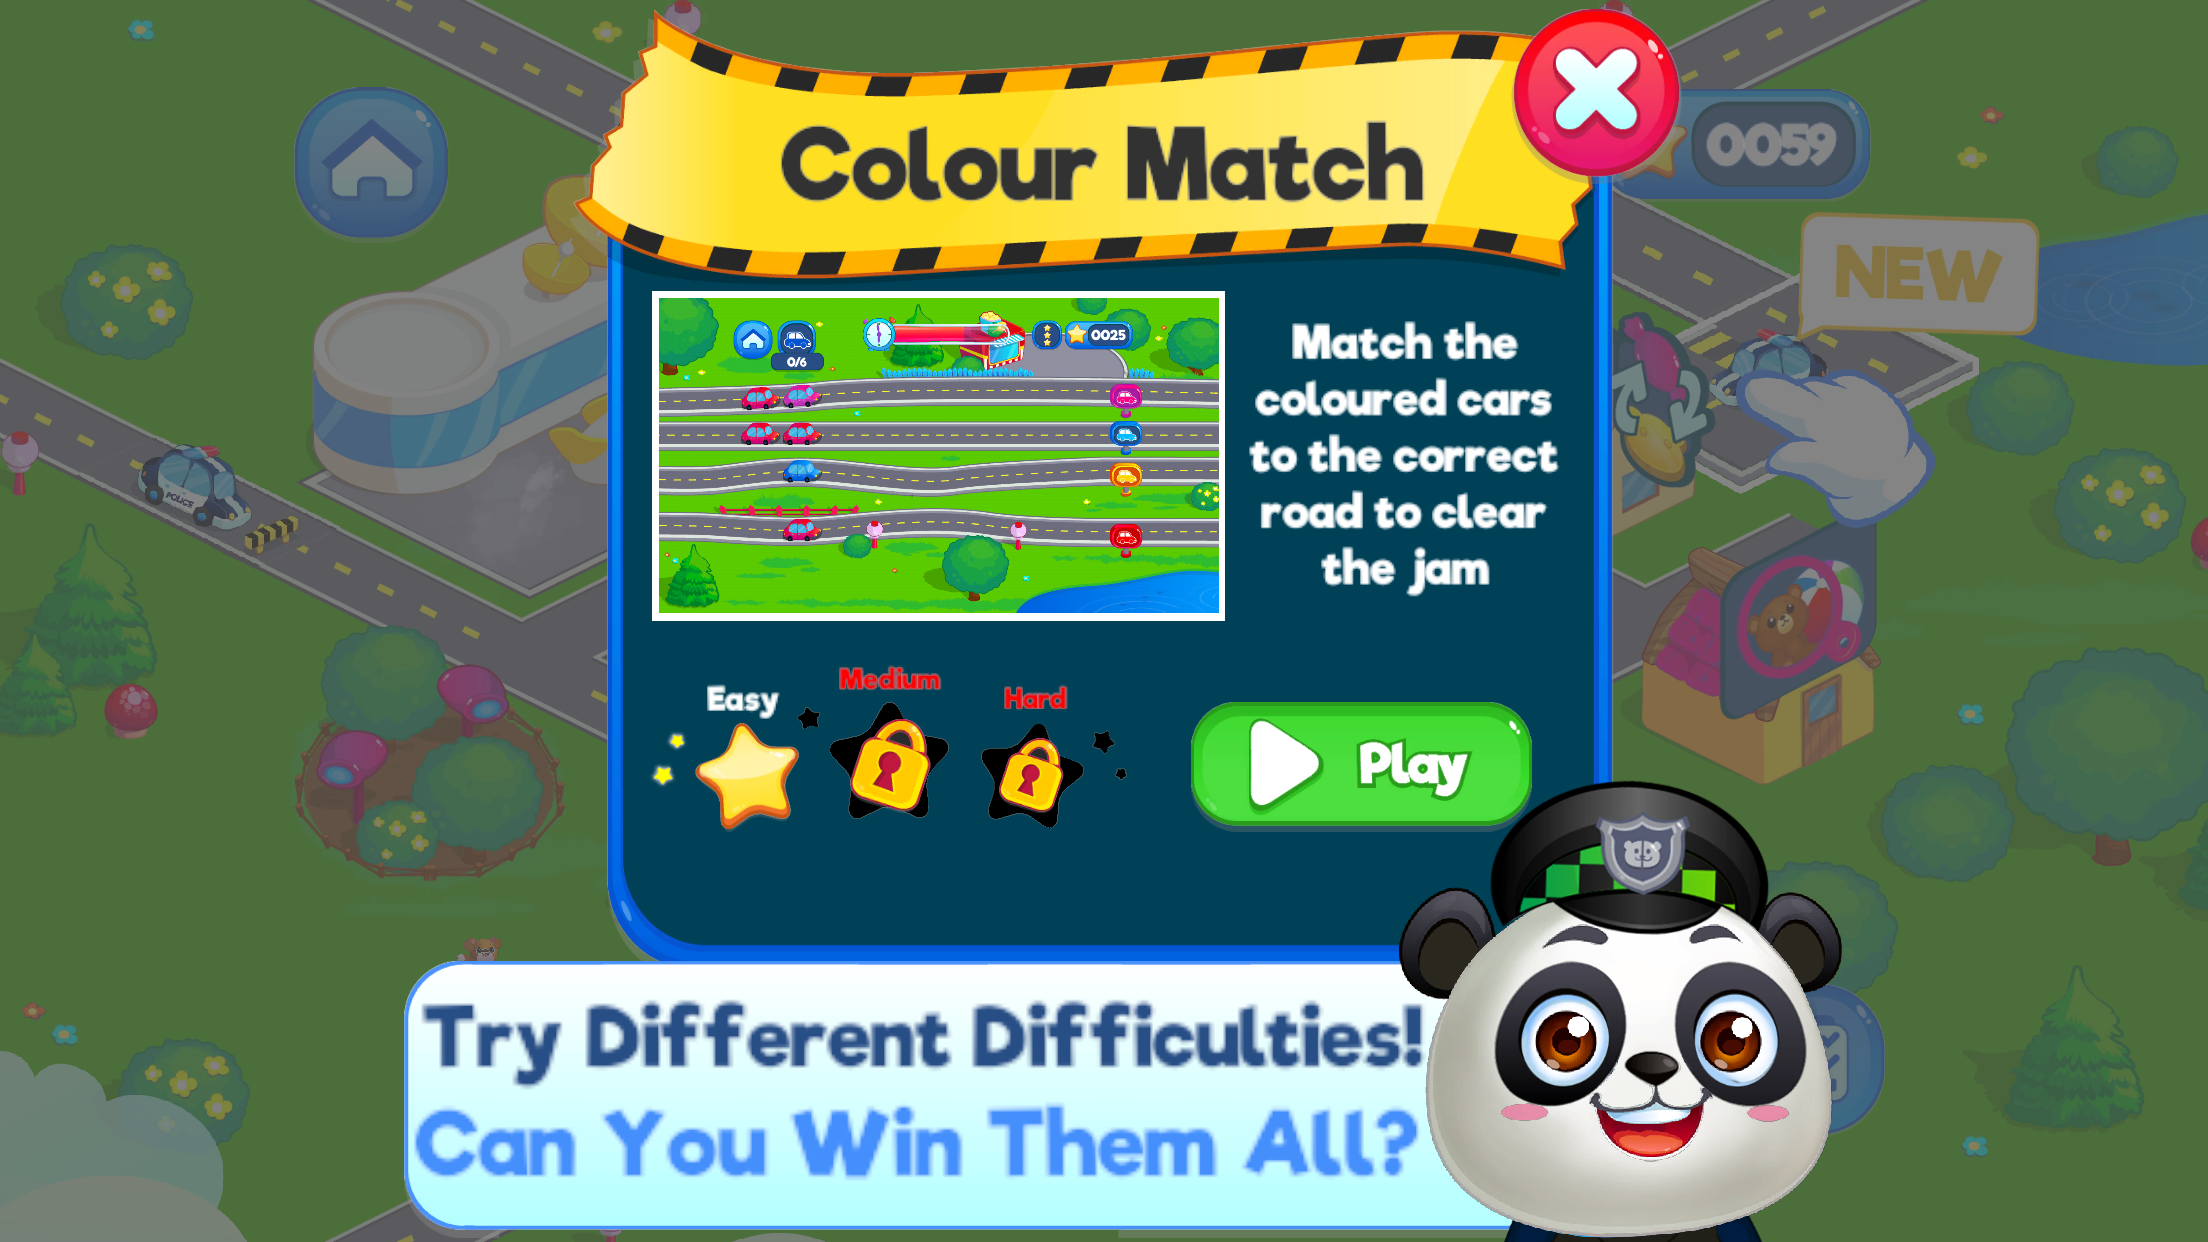 Panda Panda Police screenshot game